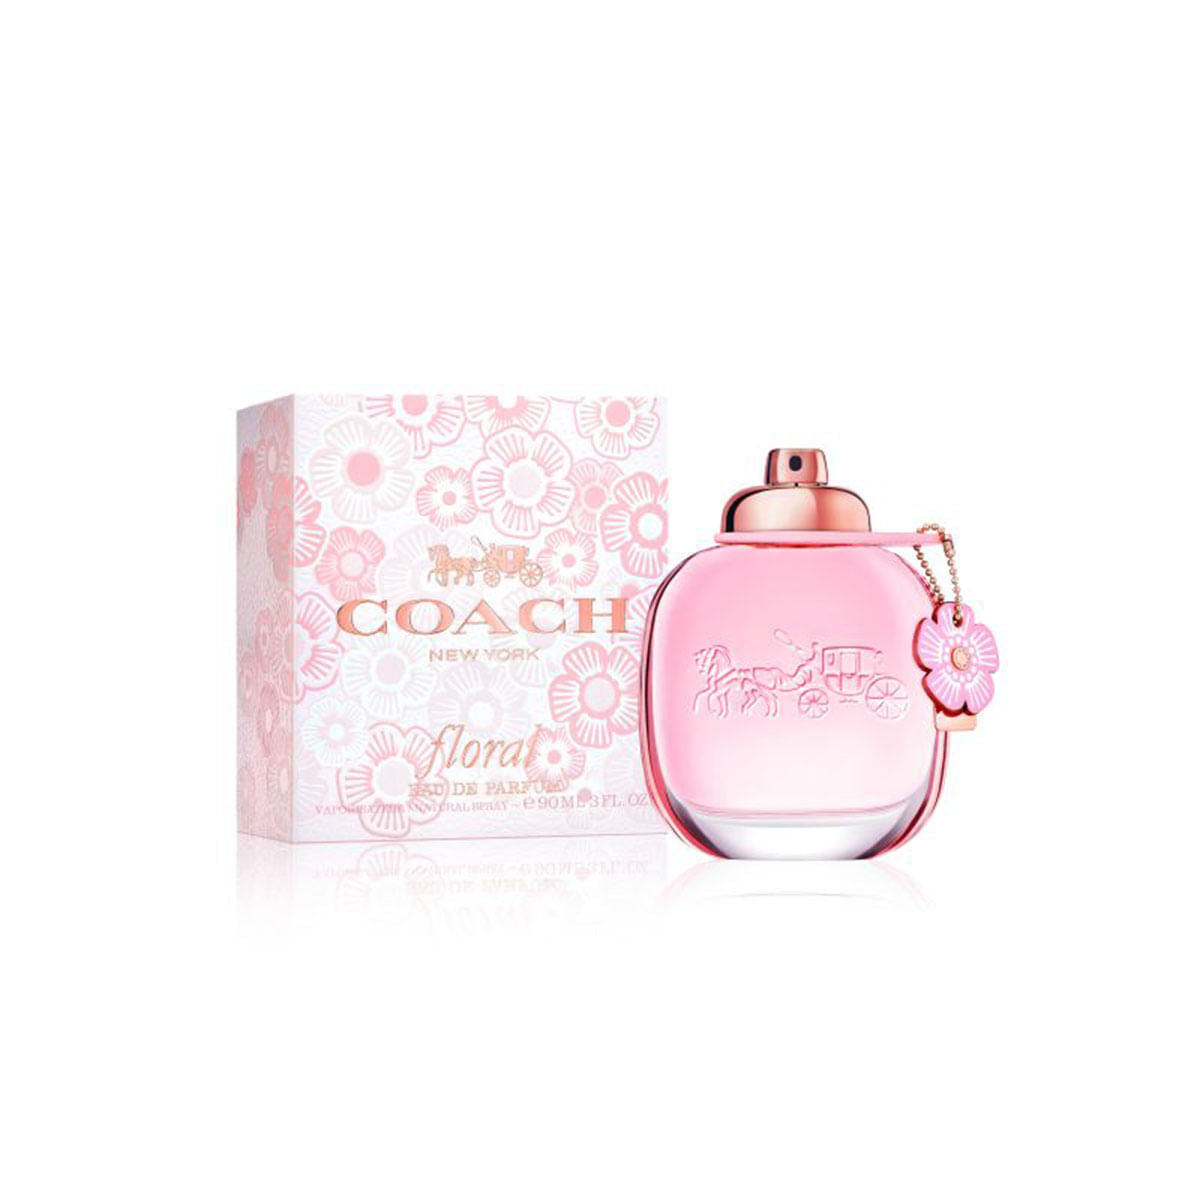 Coach Floral Eau de Parfum